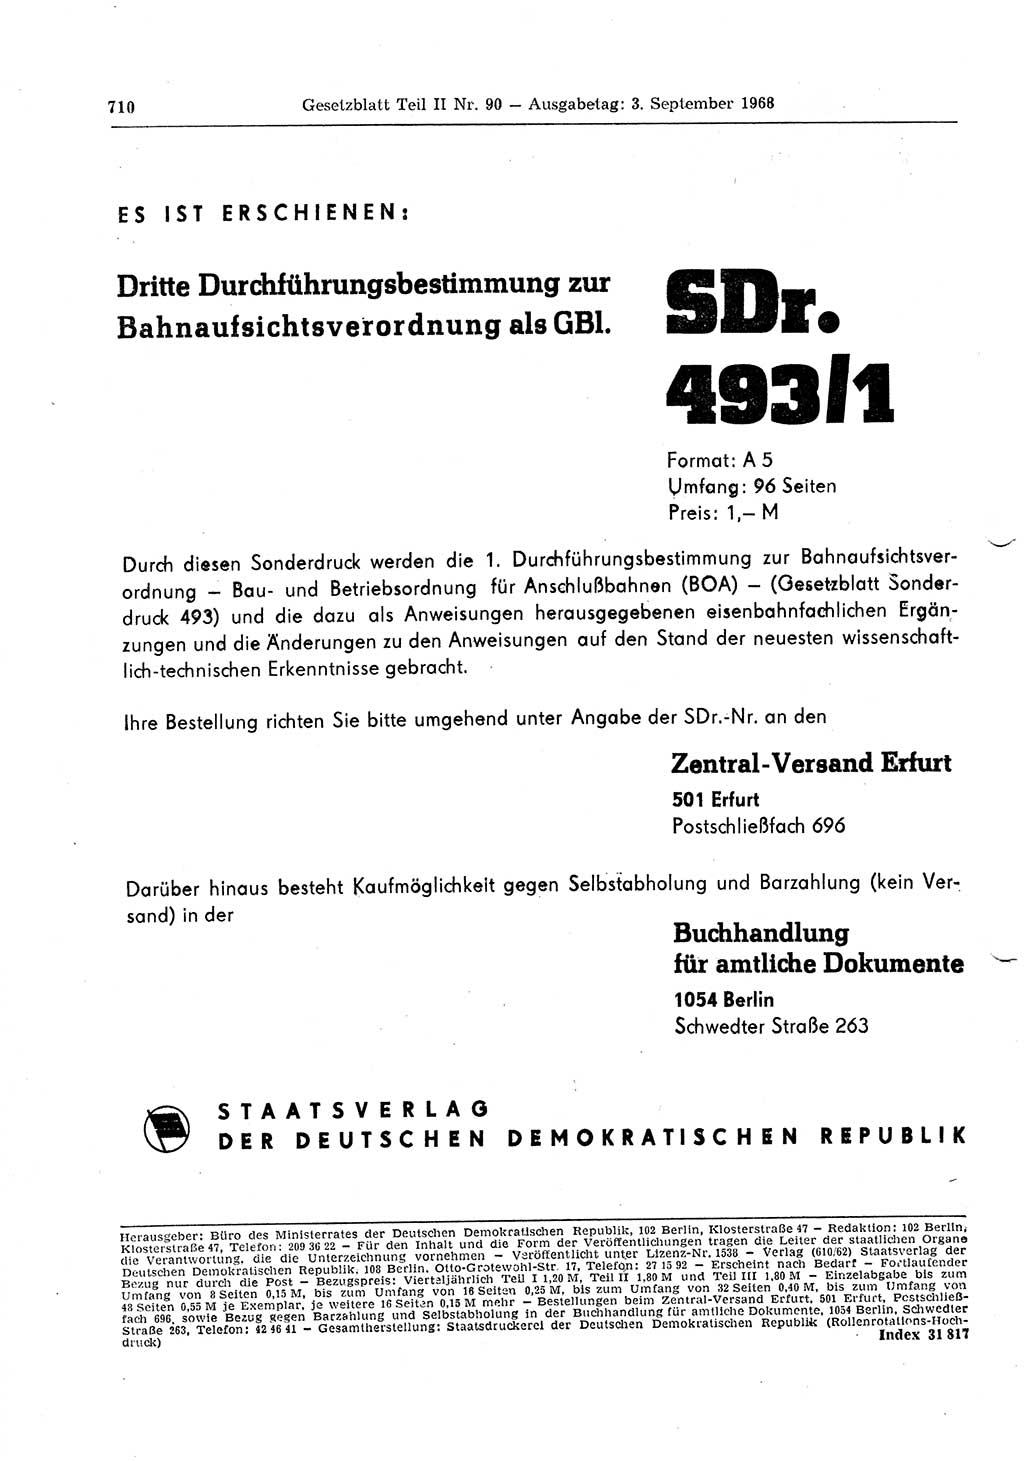 Gesetzblatt (GBl.) der Deutschen Demokratischen Republik (DDR) Teil ⅠⅠ 1968, Seite 710 (GBl. DDR ⅠⅠ 1968, S. 710)